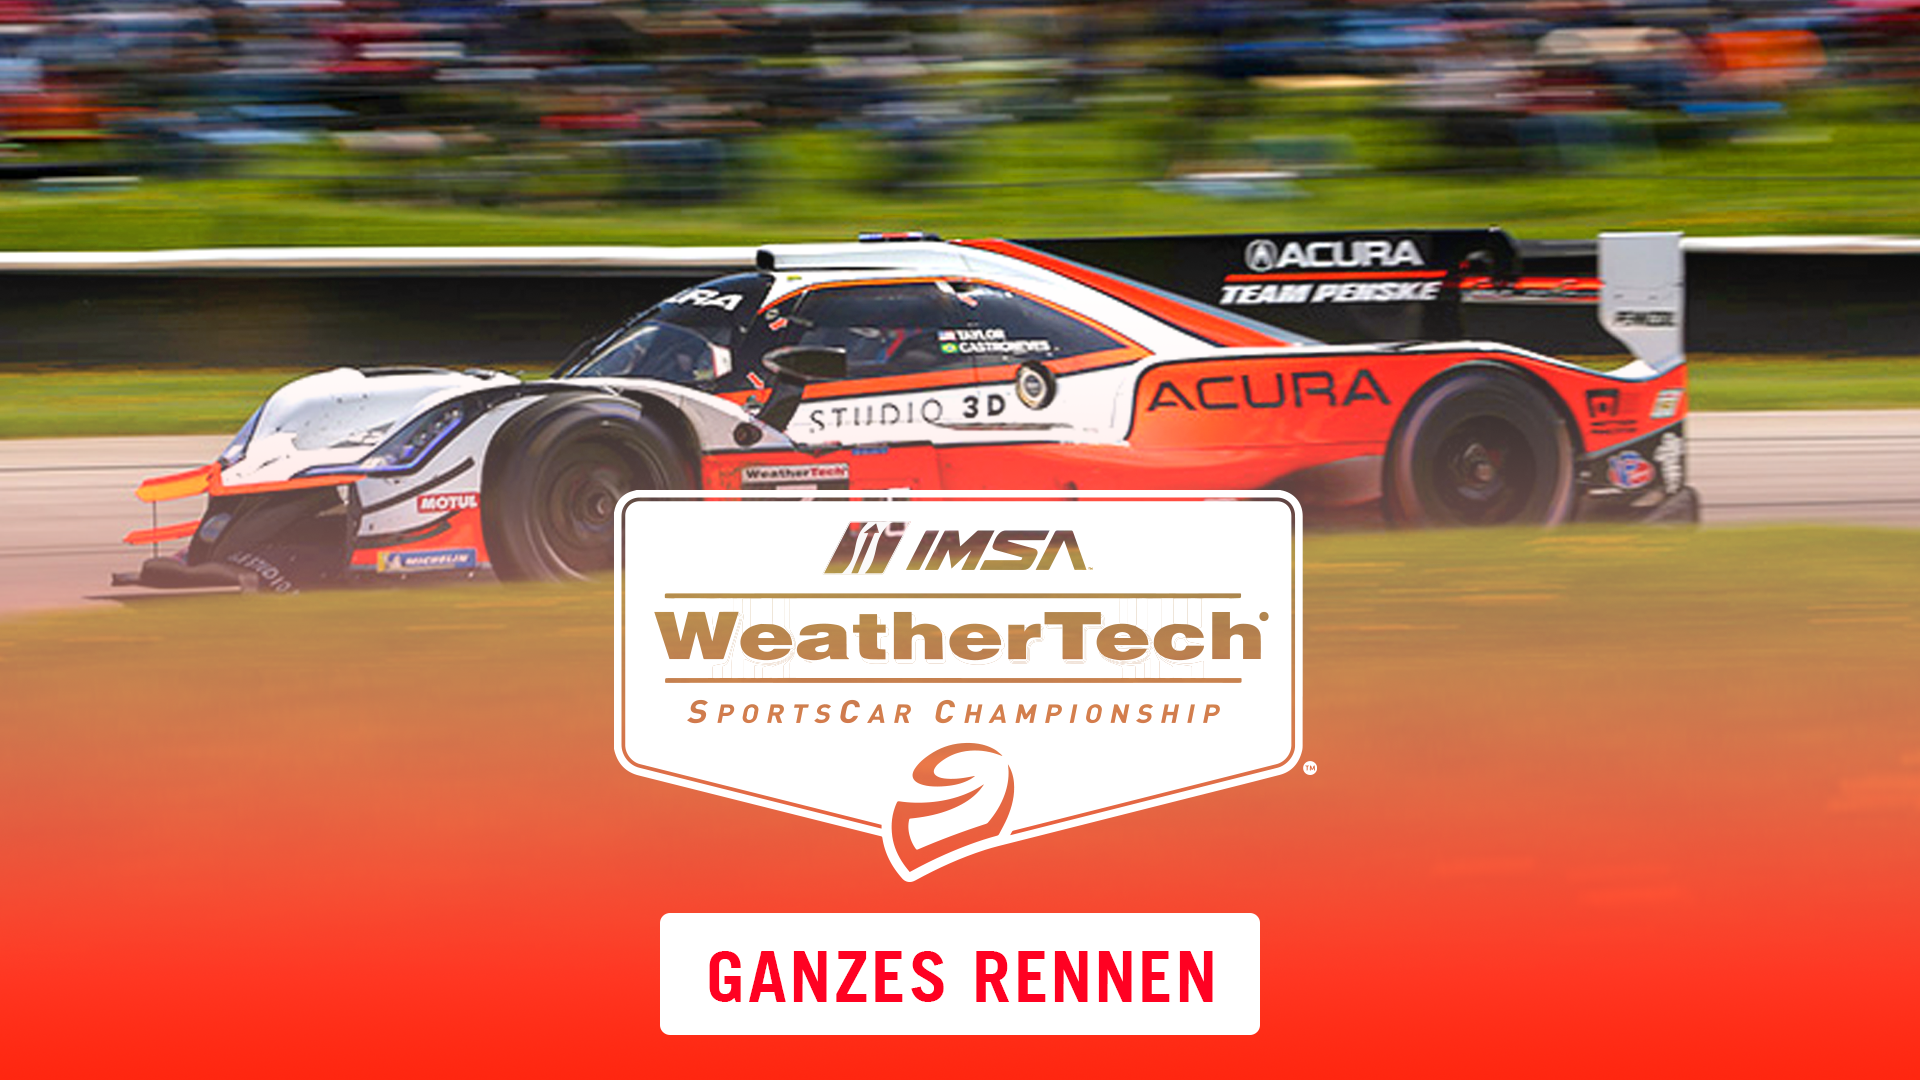 2021 IMSA Weathertech Sportscar Championship - Ganzes Rennen